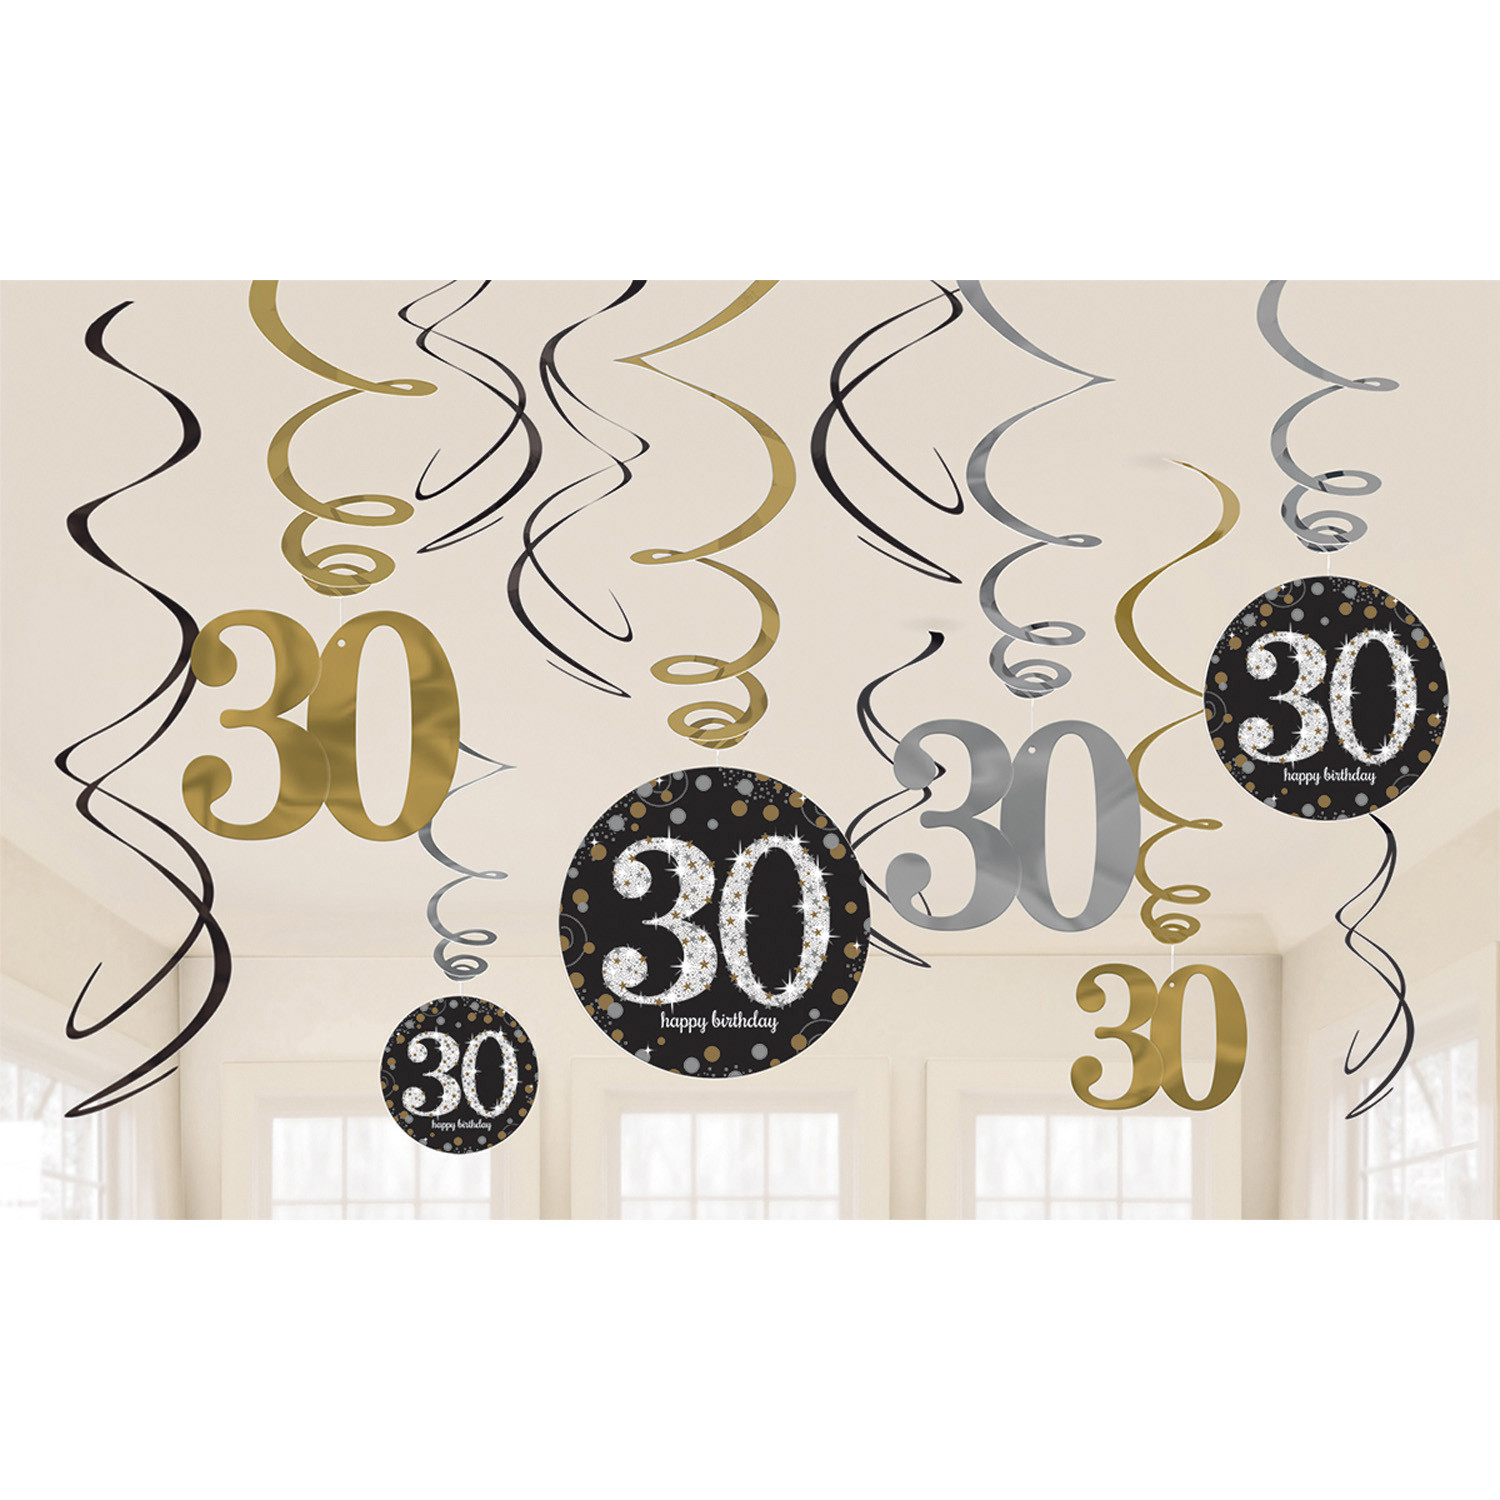 Dekoracja wisząca "30-Sparkling Celebration"